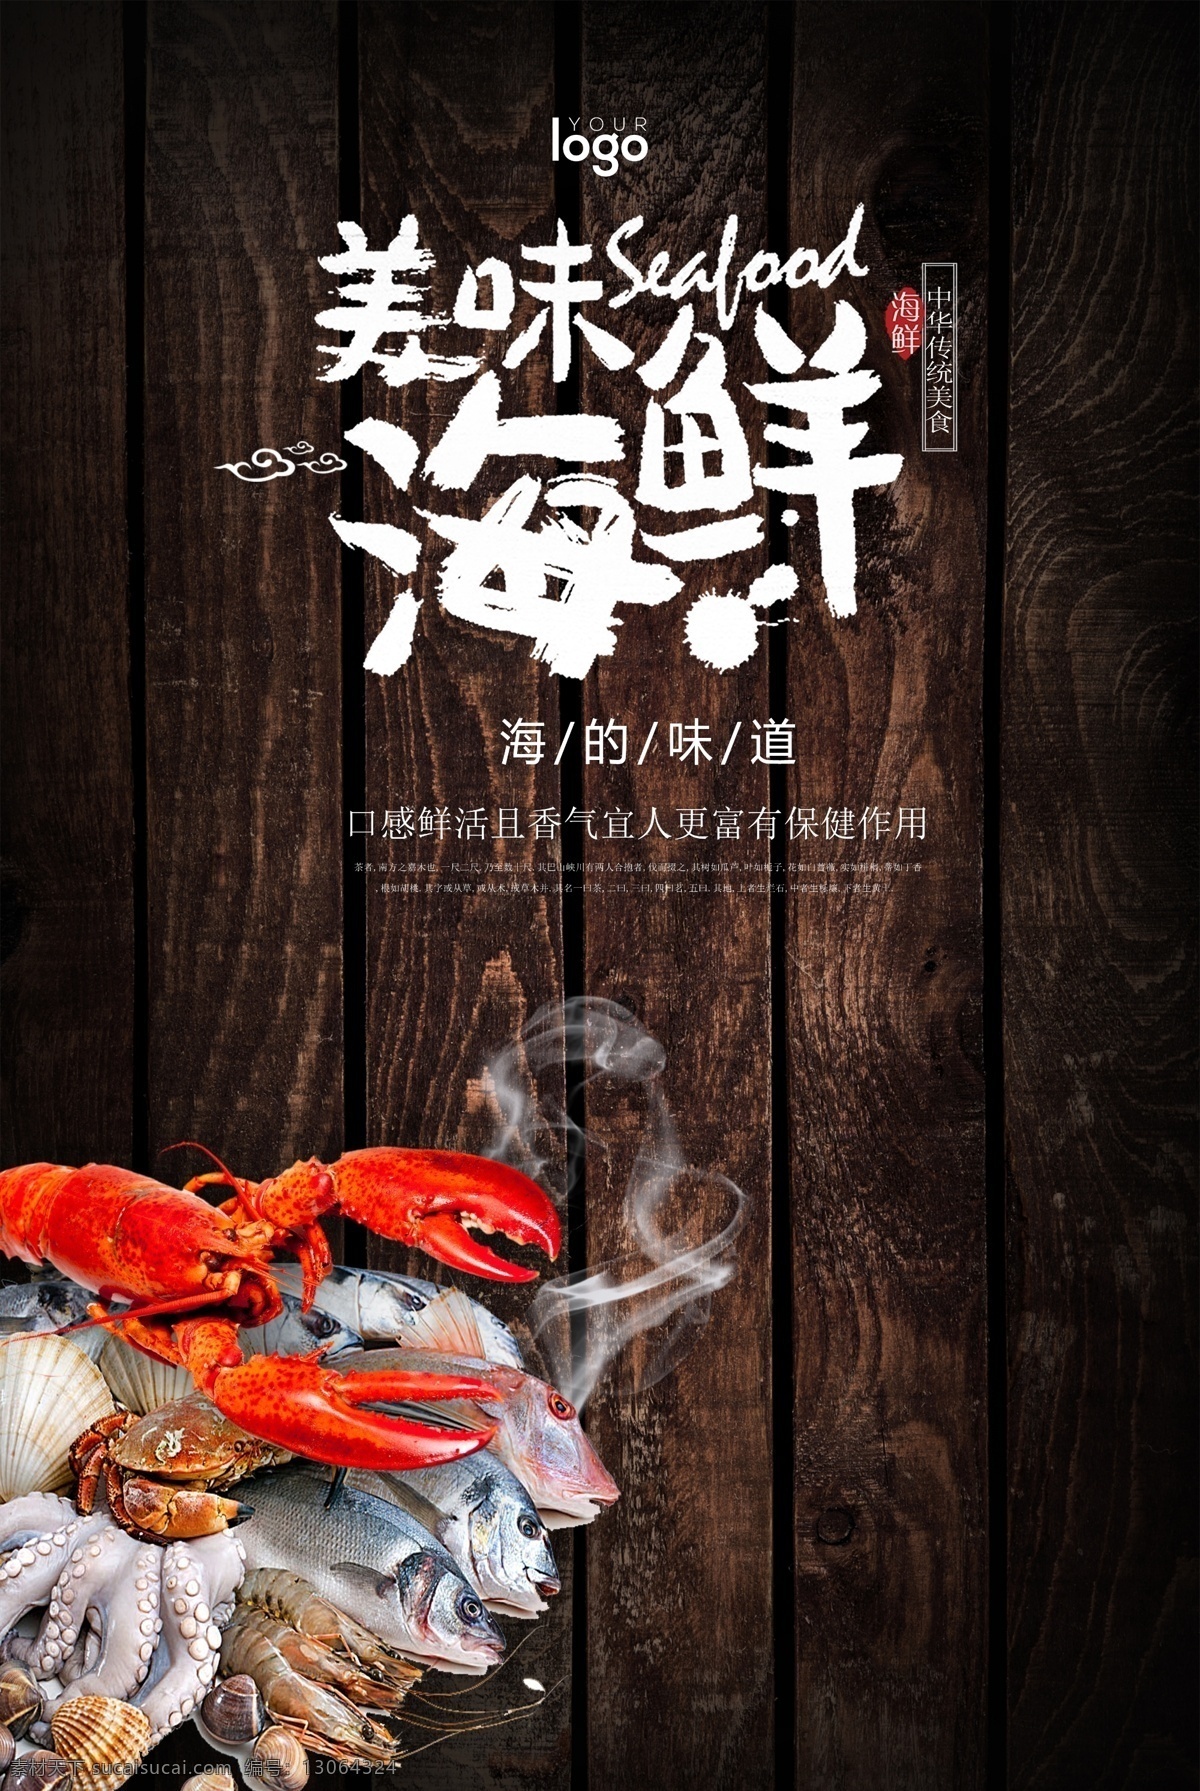 美食文化 海鲜 广告 美食 文化 螃蟹 扇贝 鲍鱼 海参 木纹